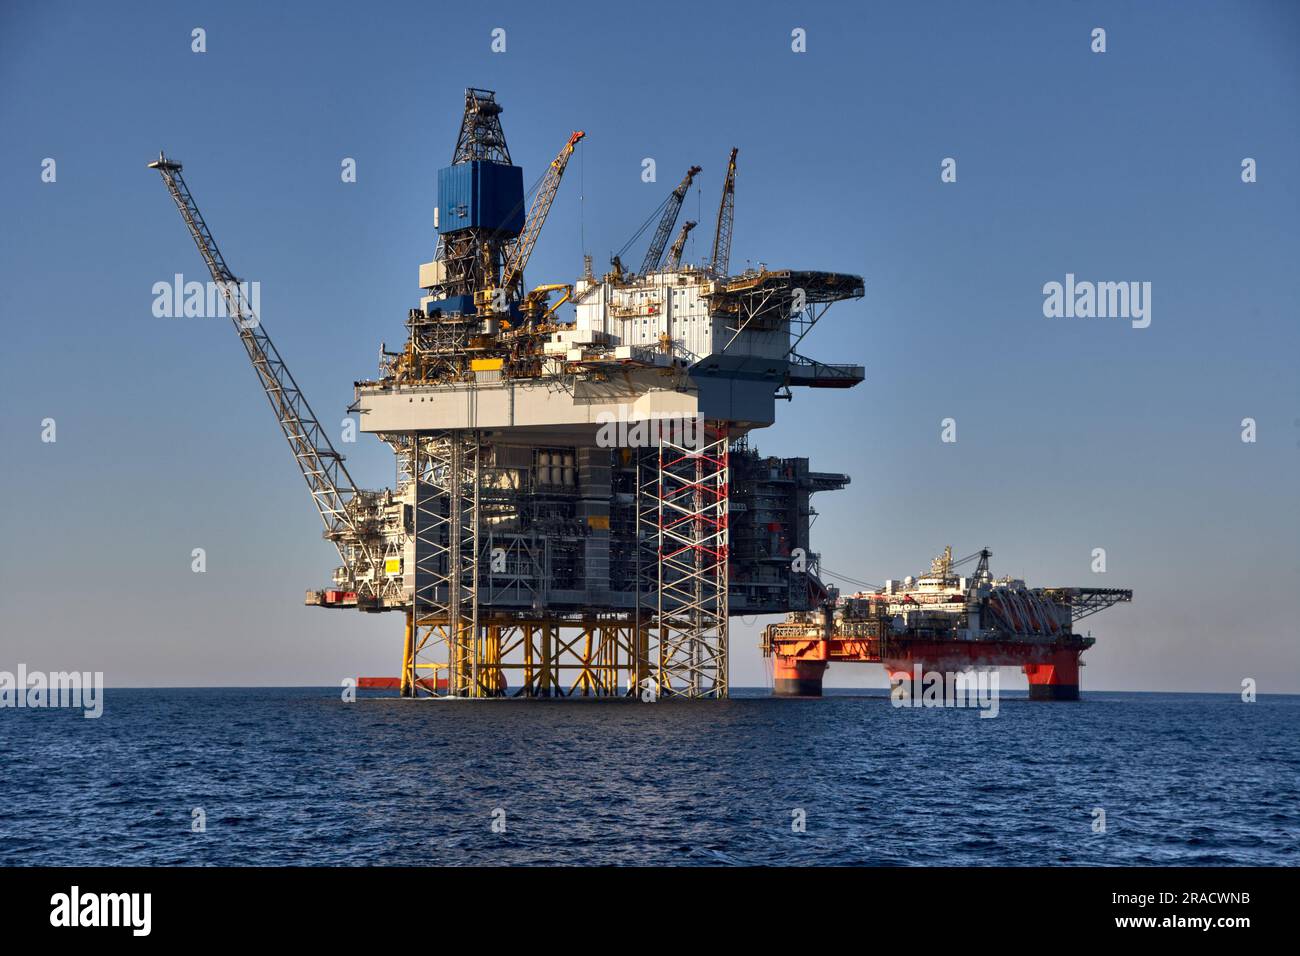 Vue sur l'installation de pétrole et de gaz offshore en une journée ensoleillée en mer. Jack up, semi-submersible, rigs production de pétrole brut dans l'océan. Banque D'Images